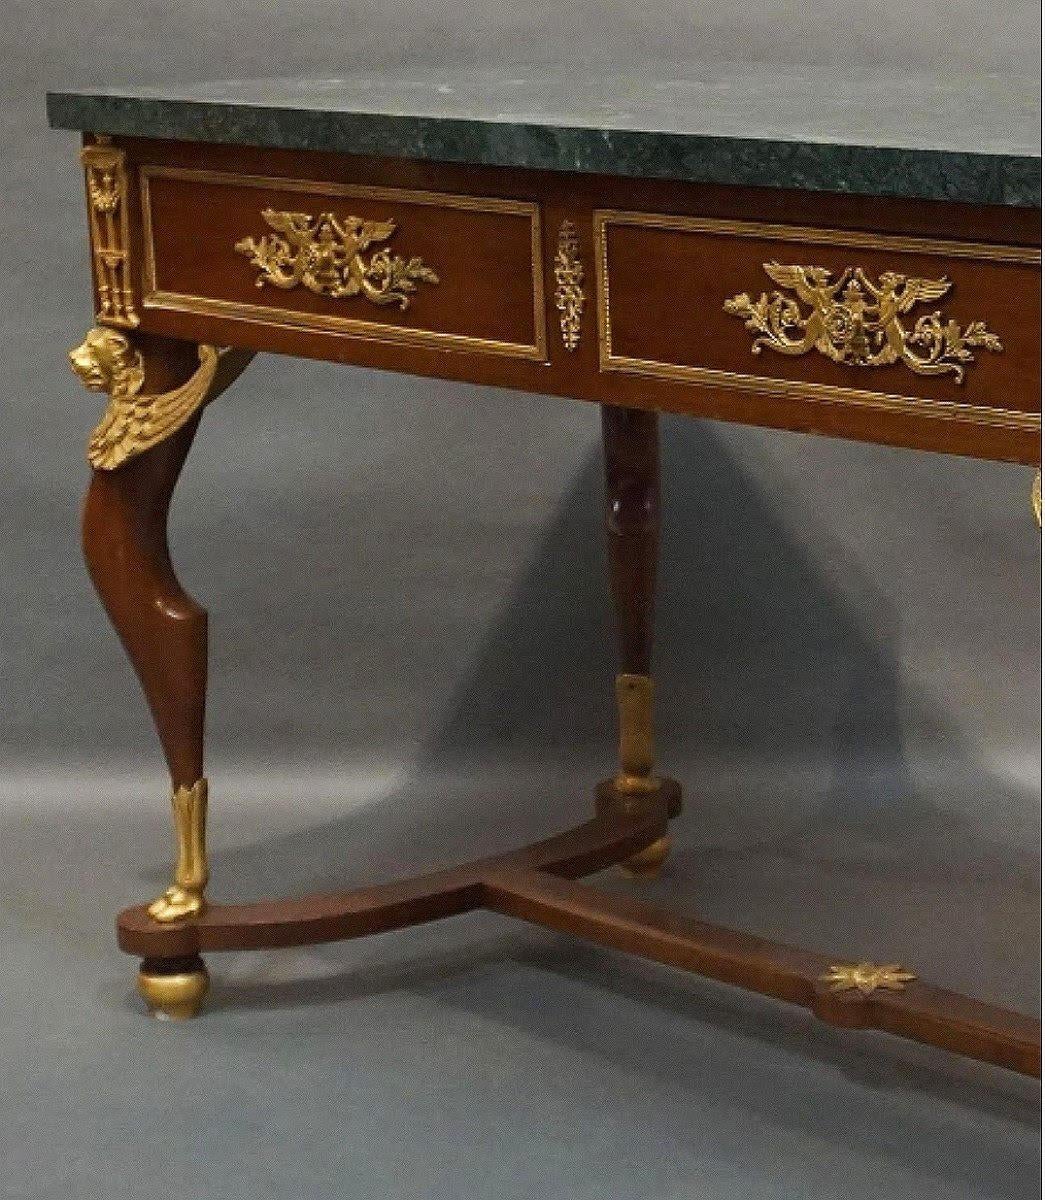 Bronze Table, bureau de style Empire en bronze doré, acajou et marbre.